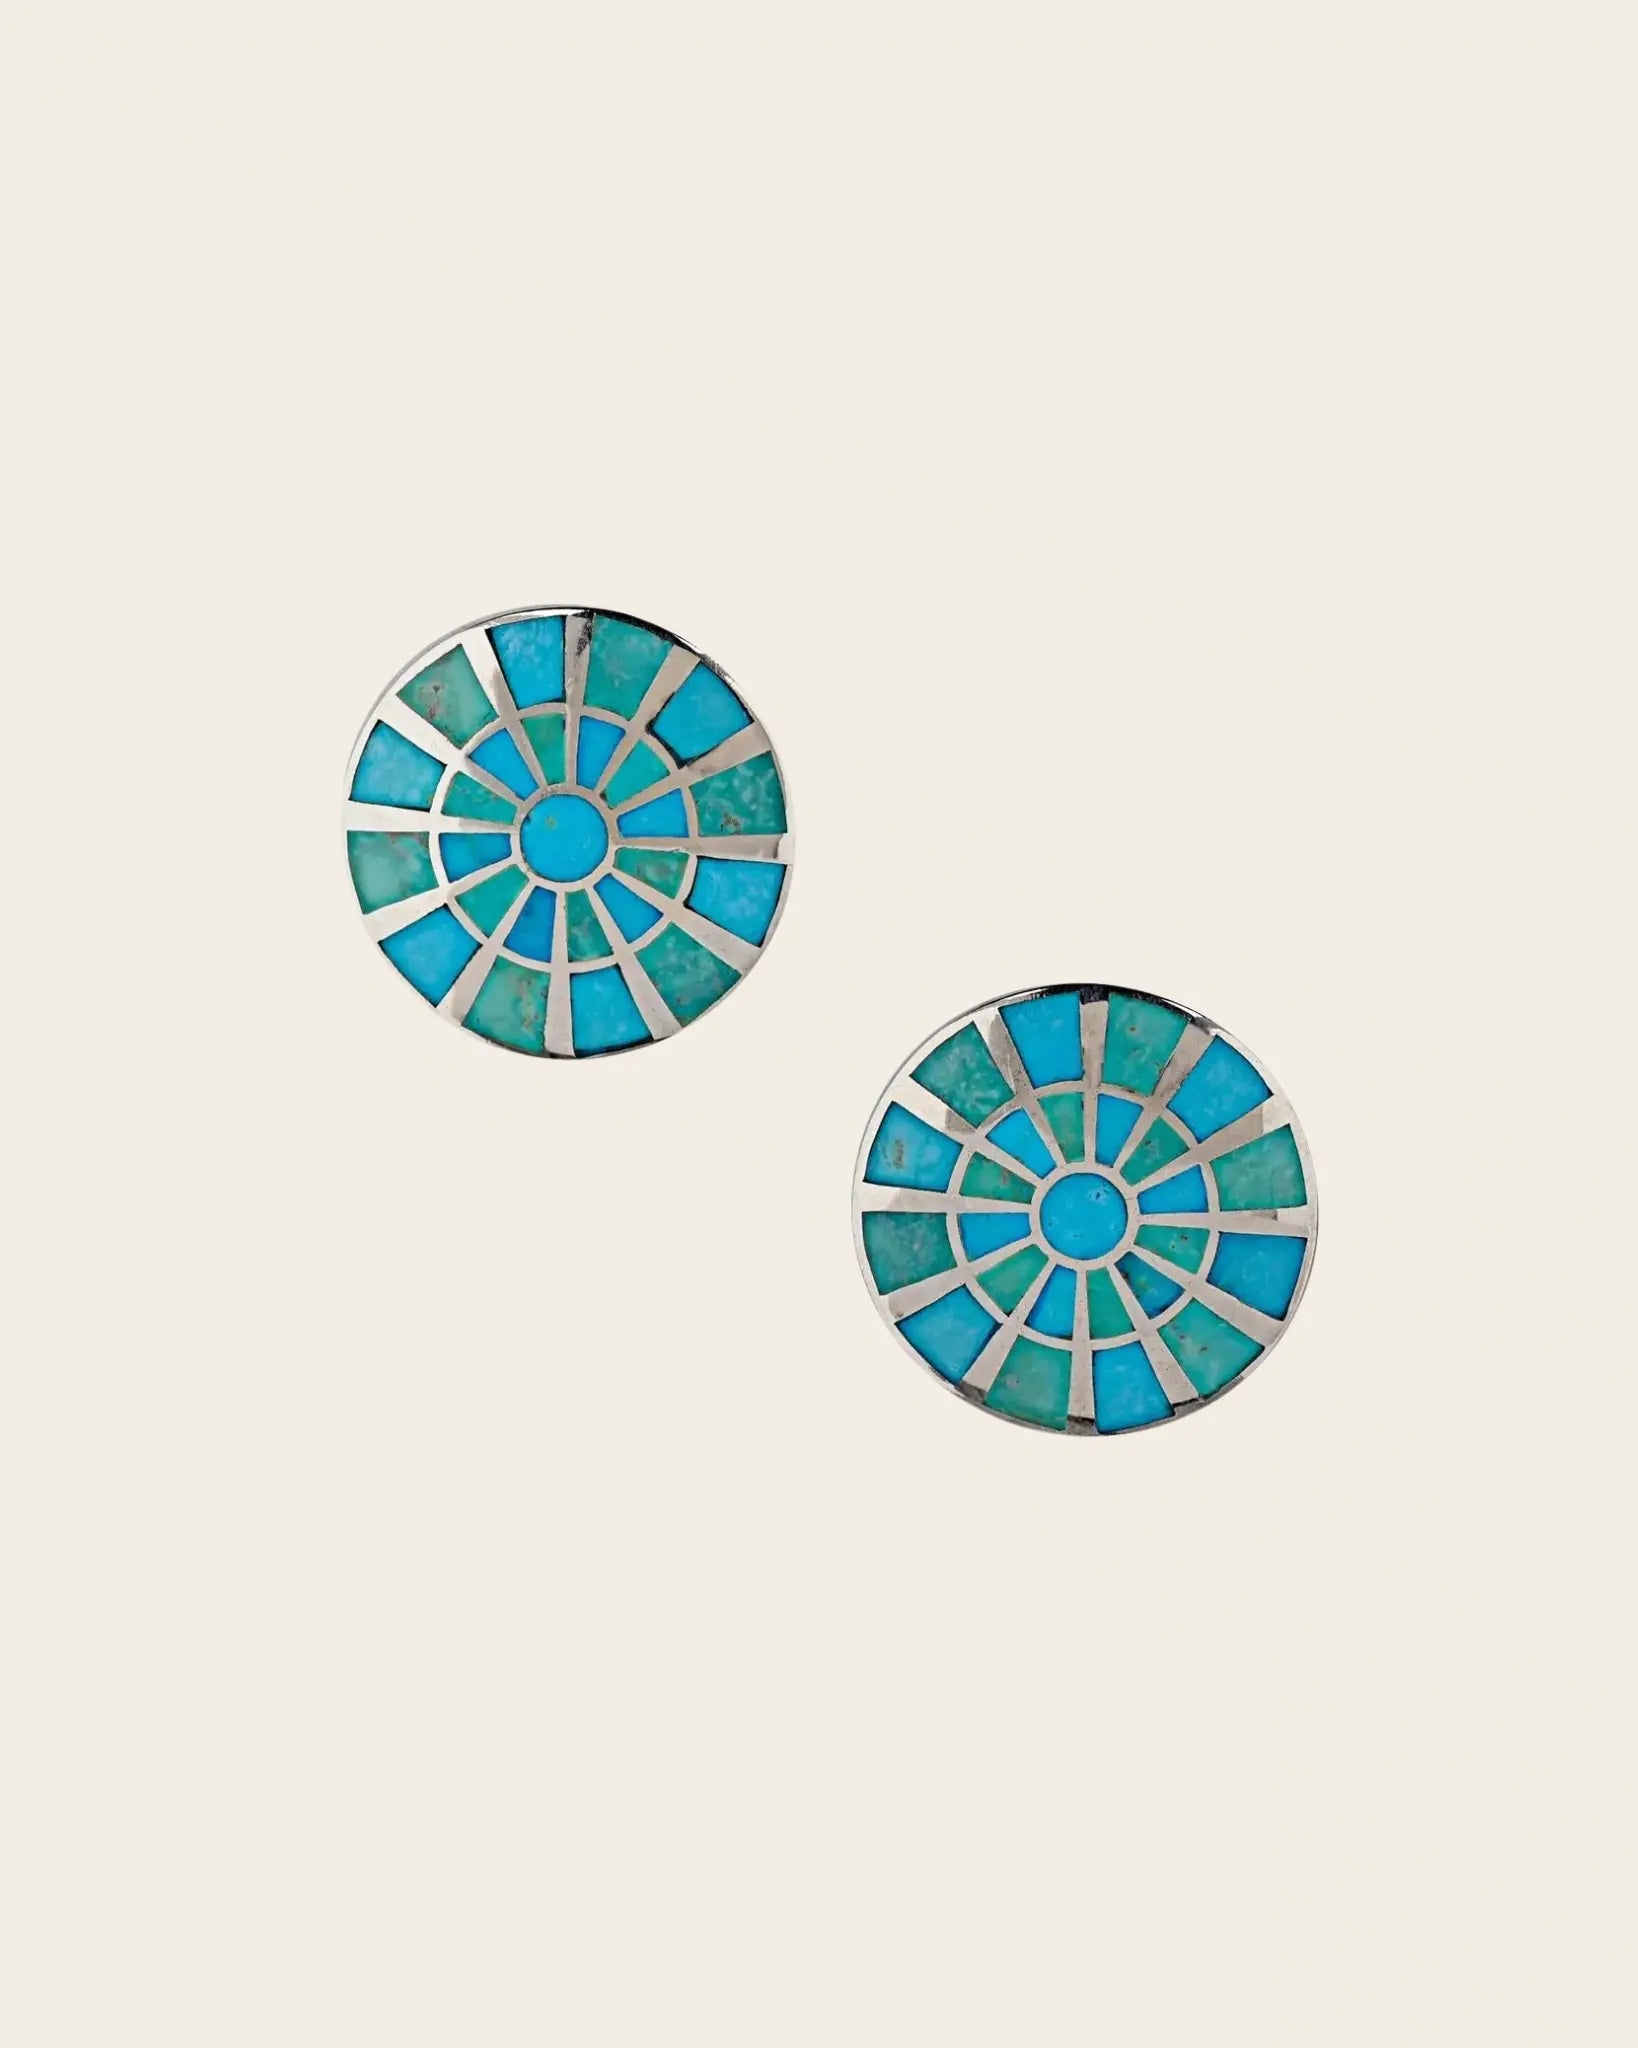 Turquoise Pinwheel Earrings Turquoise Pinwheel Earrings Squash Blossom Original Squash Blossom Original  Squash Blossom Vail